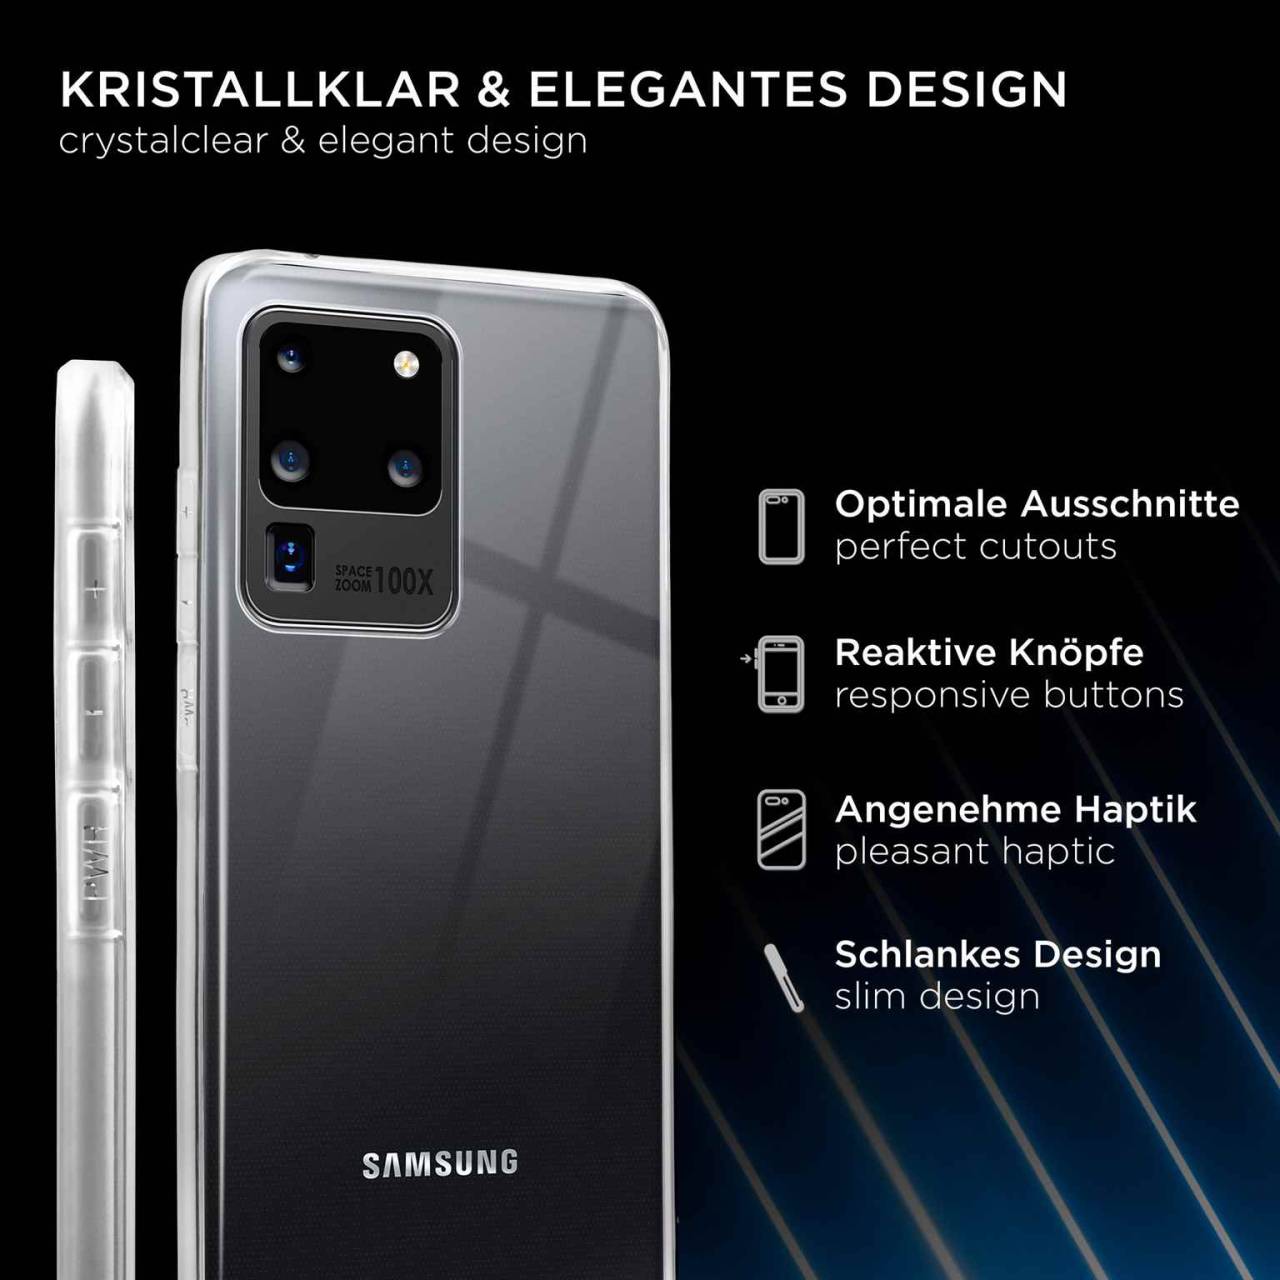 ONEFLOW Clear Case für Samsung Galaxy S20 Ultra 5G – Transparente Hülle aus Soft Silikon, Extrem schlank